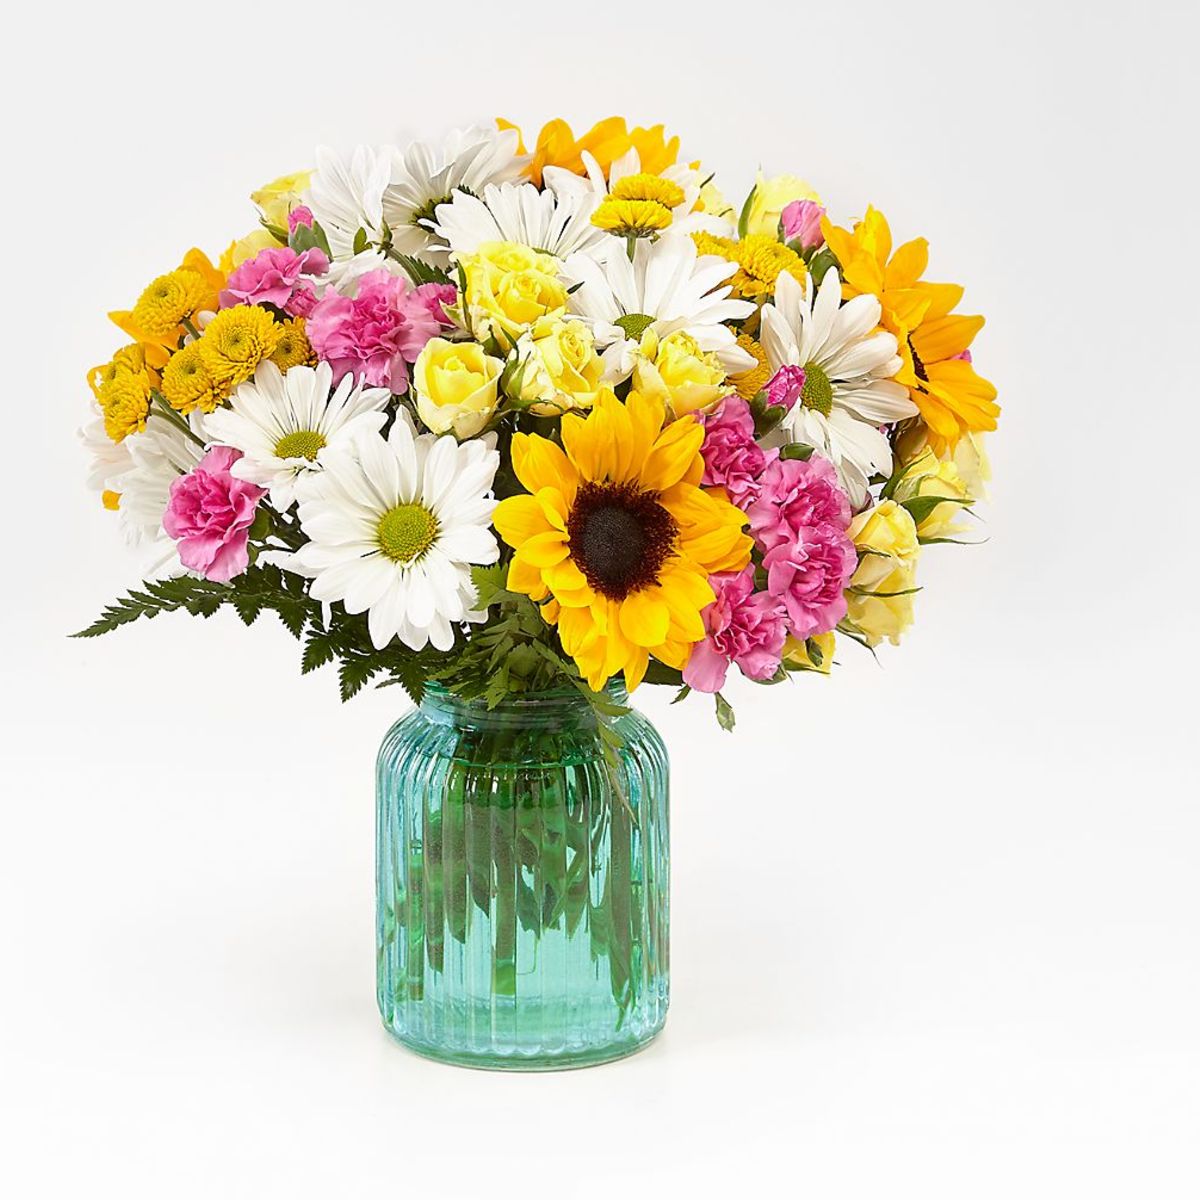 Sunlit Meadows™ Bouquet - Exquisite Flower Bouquet